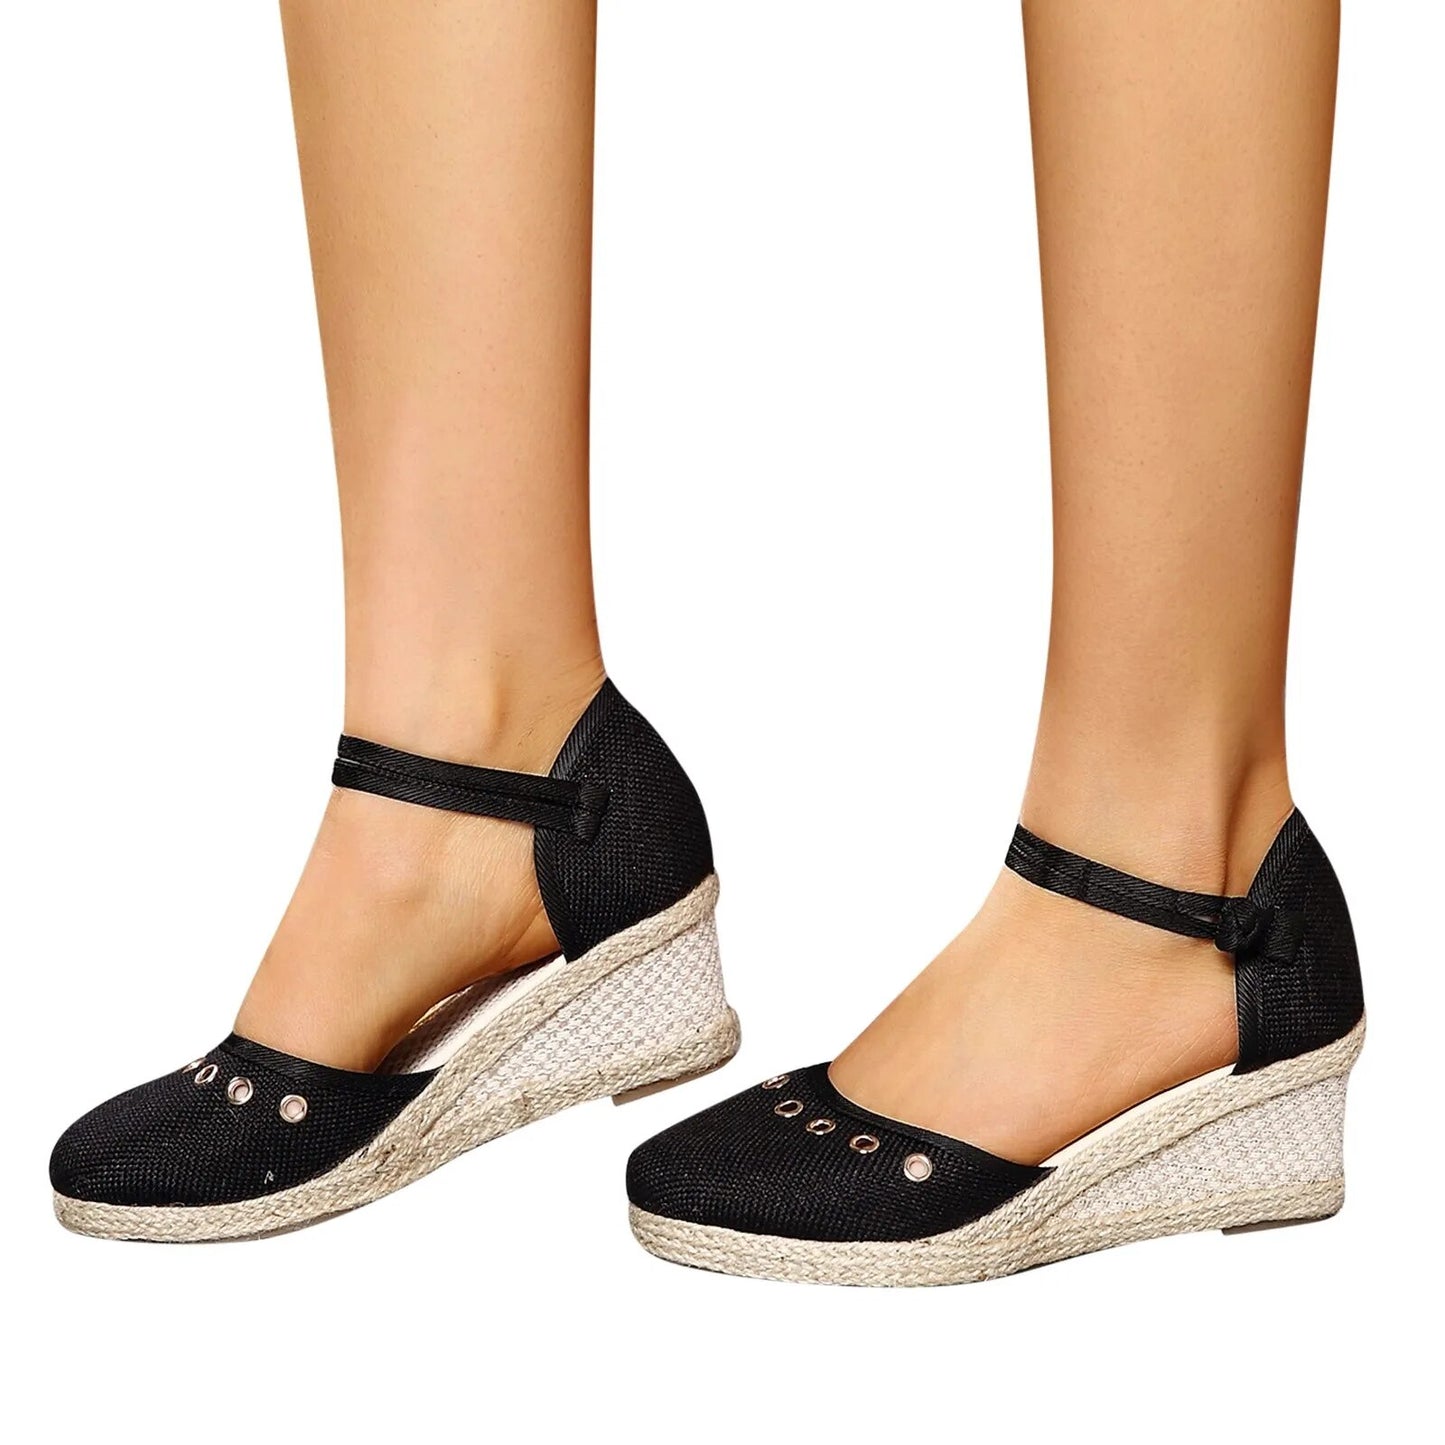 2023 Platform Sandals Wedge Woman Shoes/Elegant Ladies Slippers Summer Braided Buckle